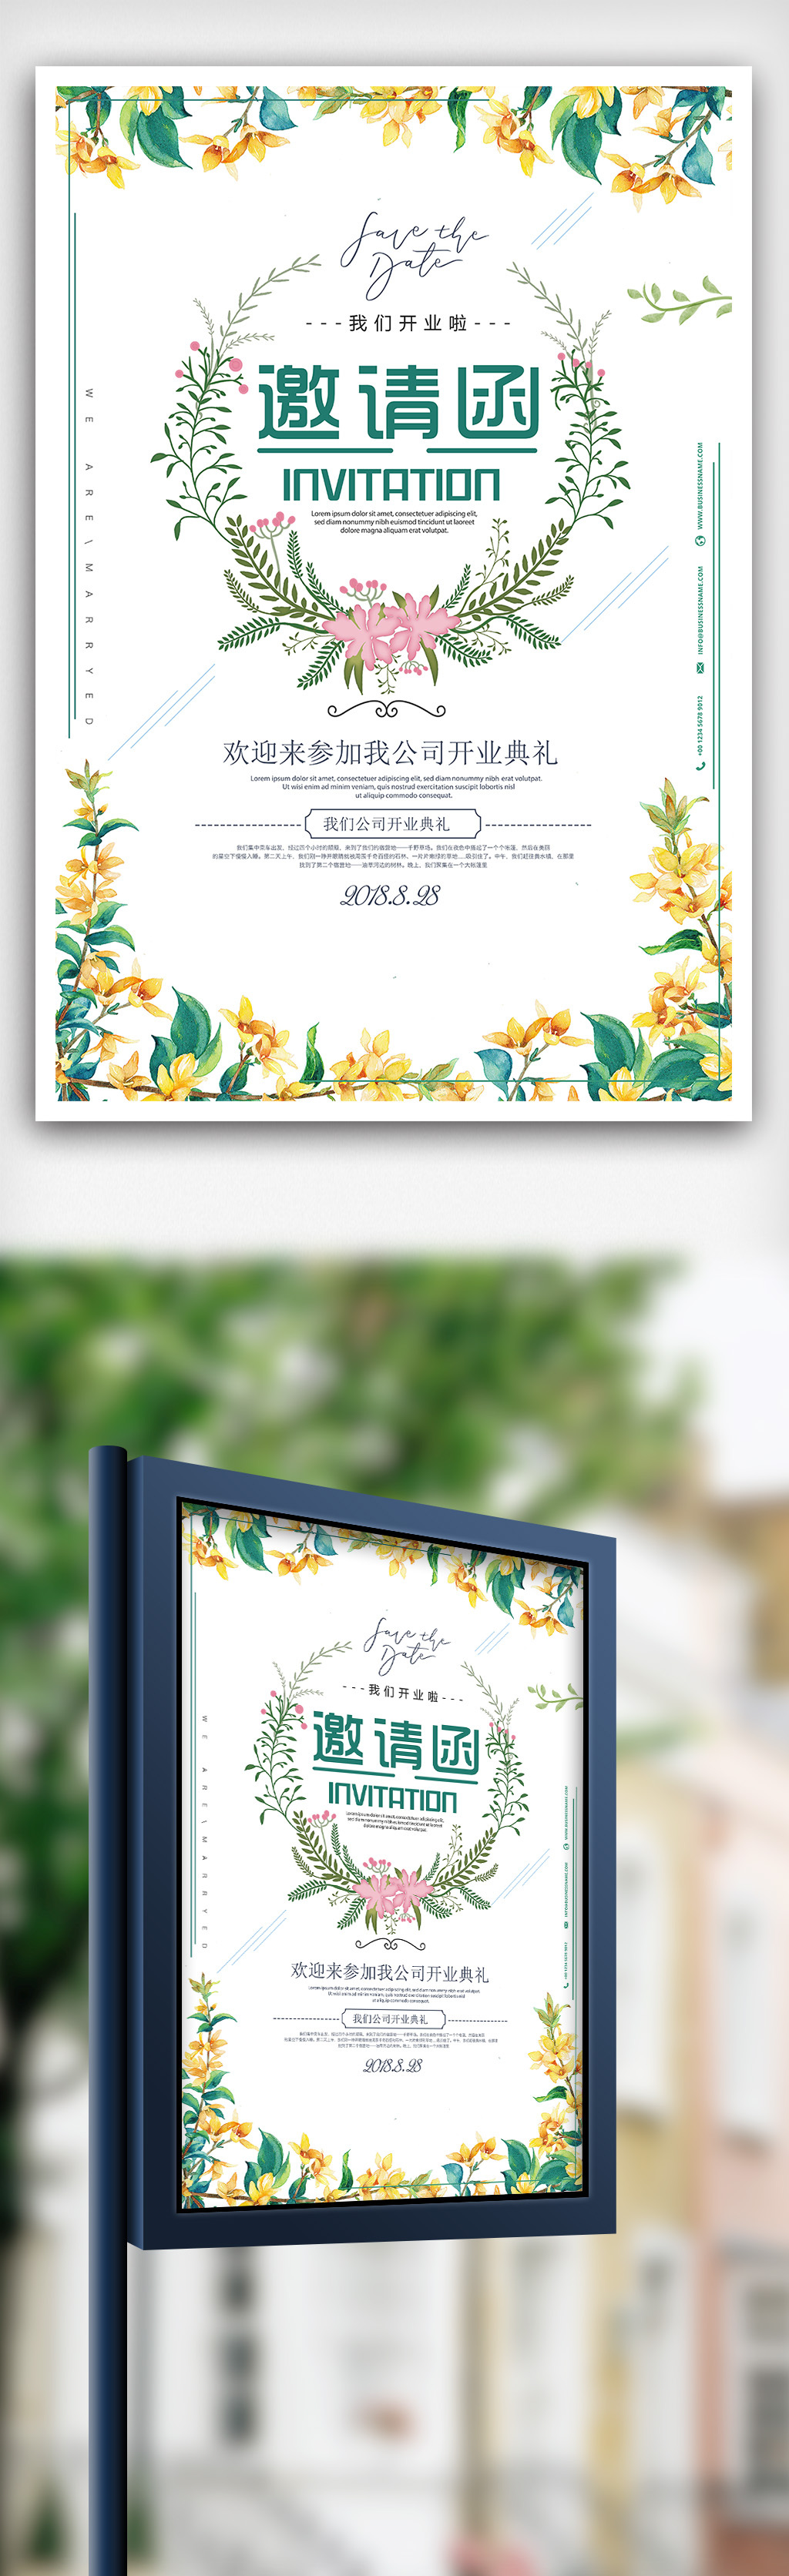 小清新手绘花朵邀请函宣传海报模板图片